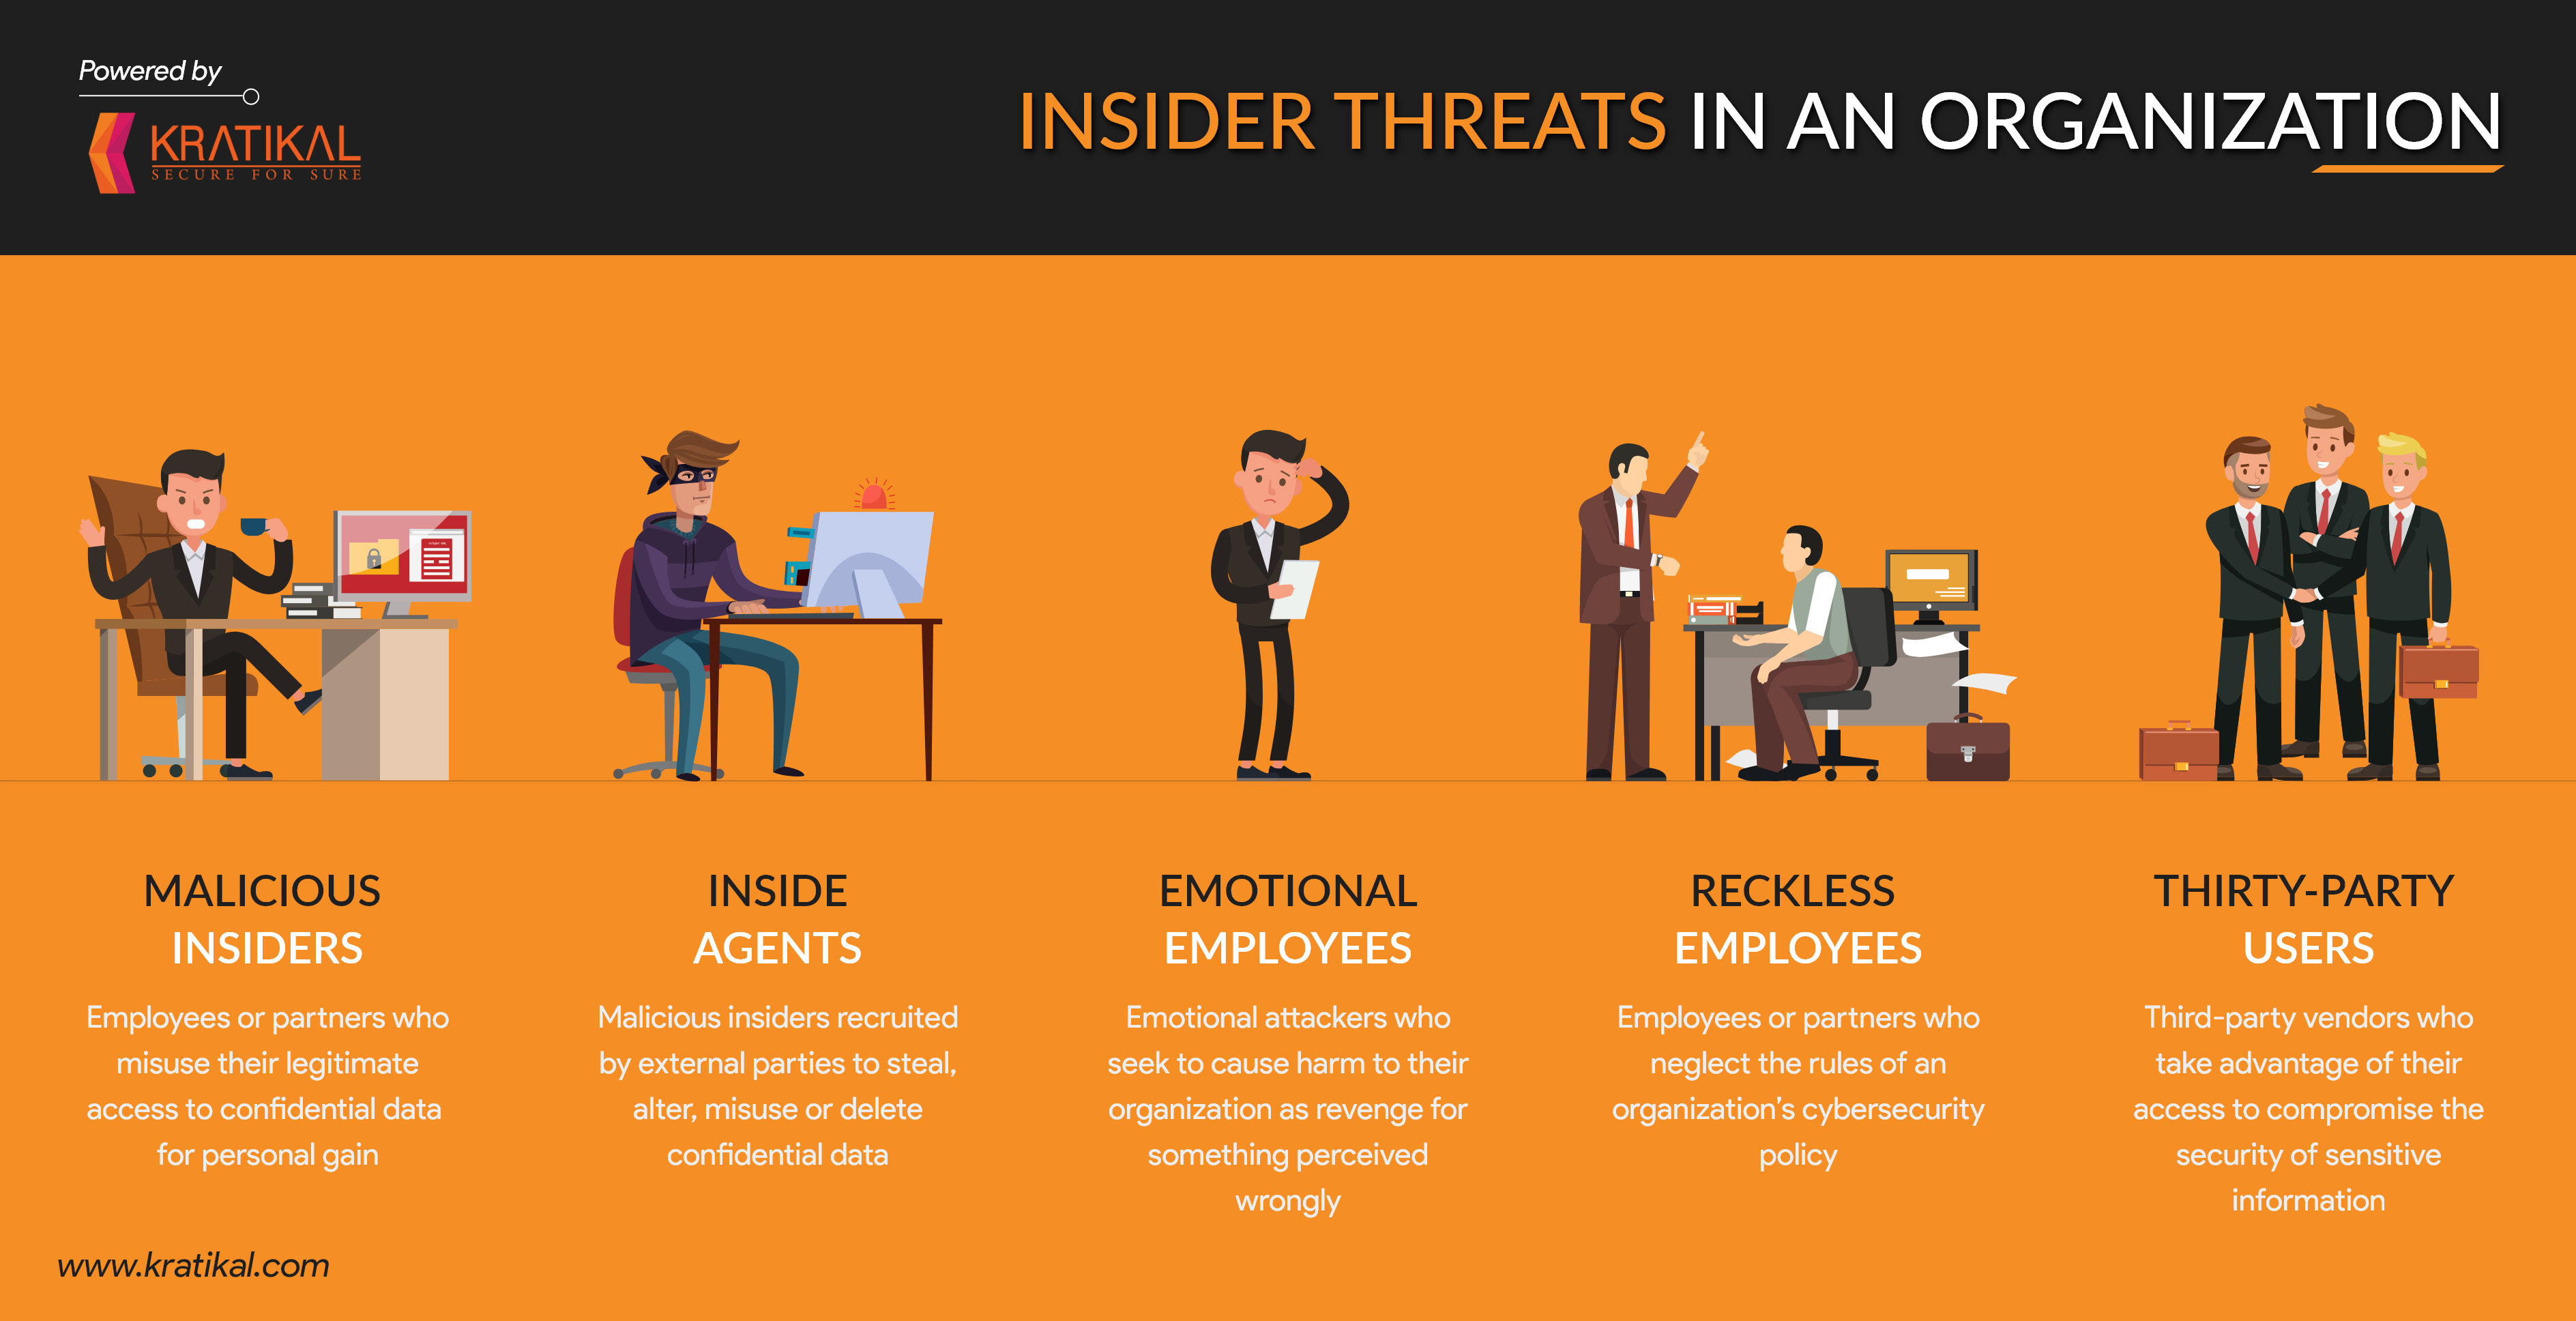 Types of Insider Threats